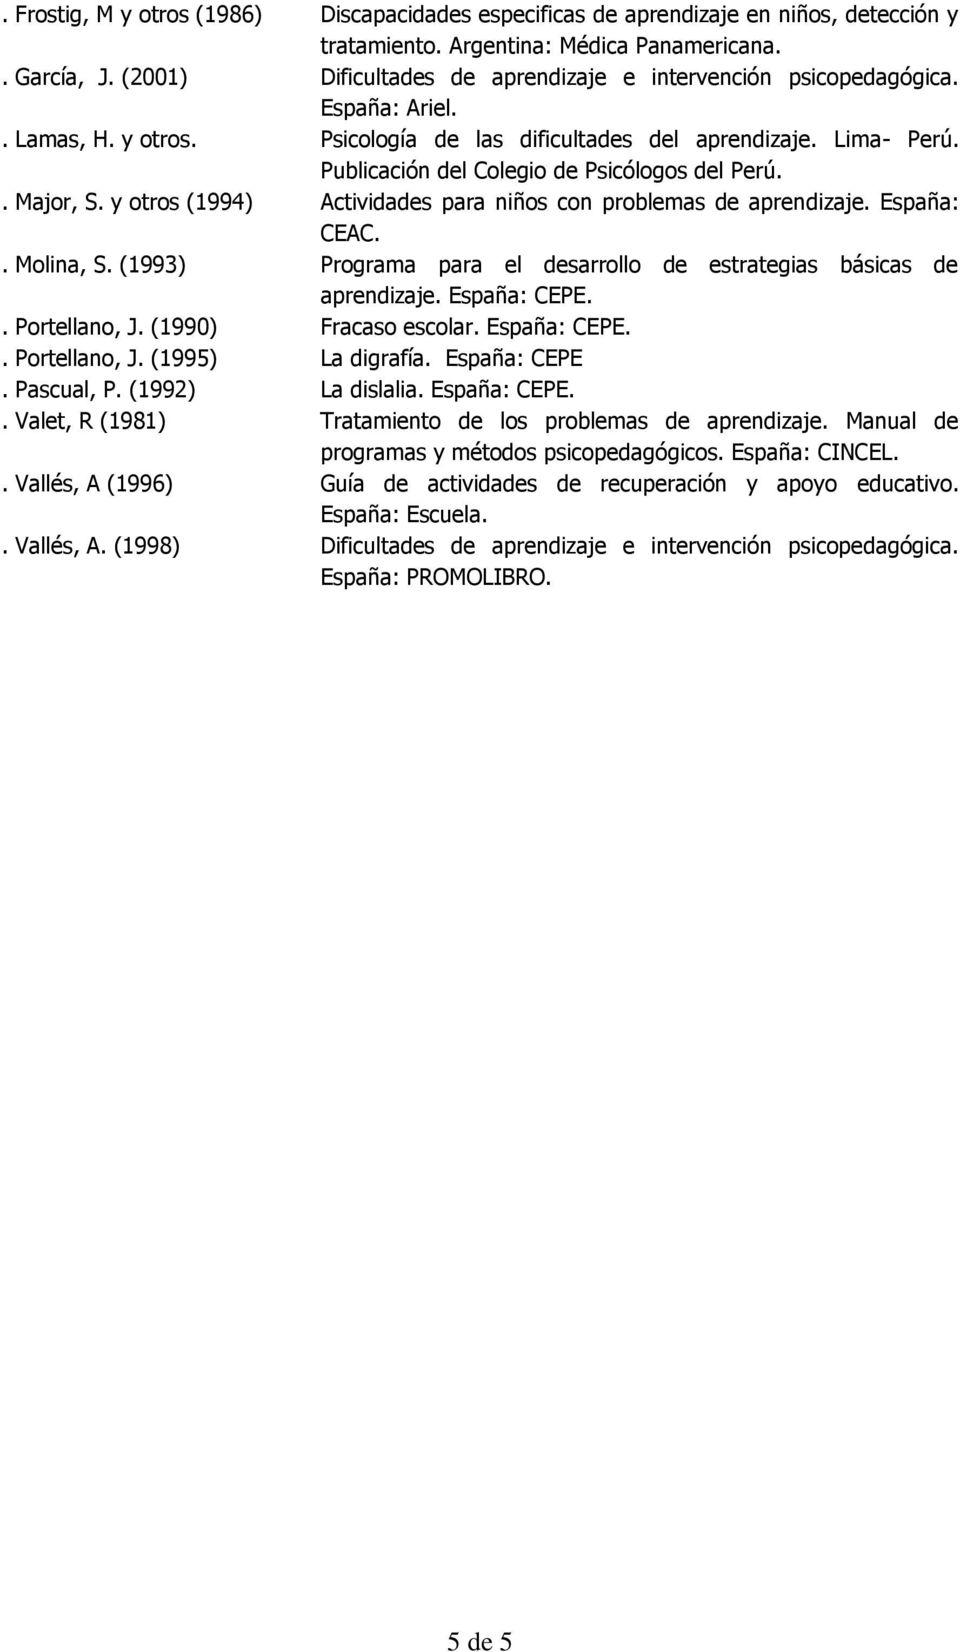 (1993) Programa para el sarrollo estrategias básicas España: CEPE.. Portellano, J. (1990) Fracaso escolar. España: CEPE.. Portellano, J. (1995) La digrafía. España: CEPE. Pascual, P.